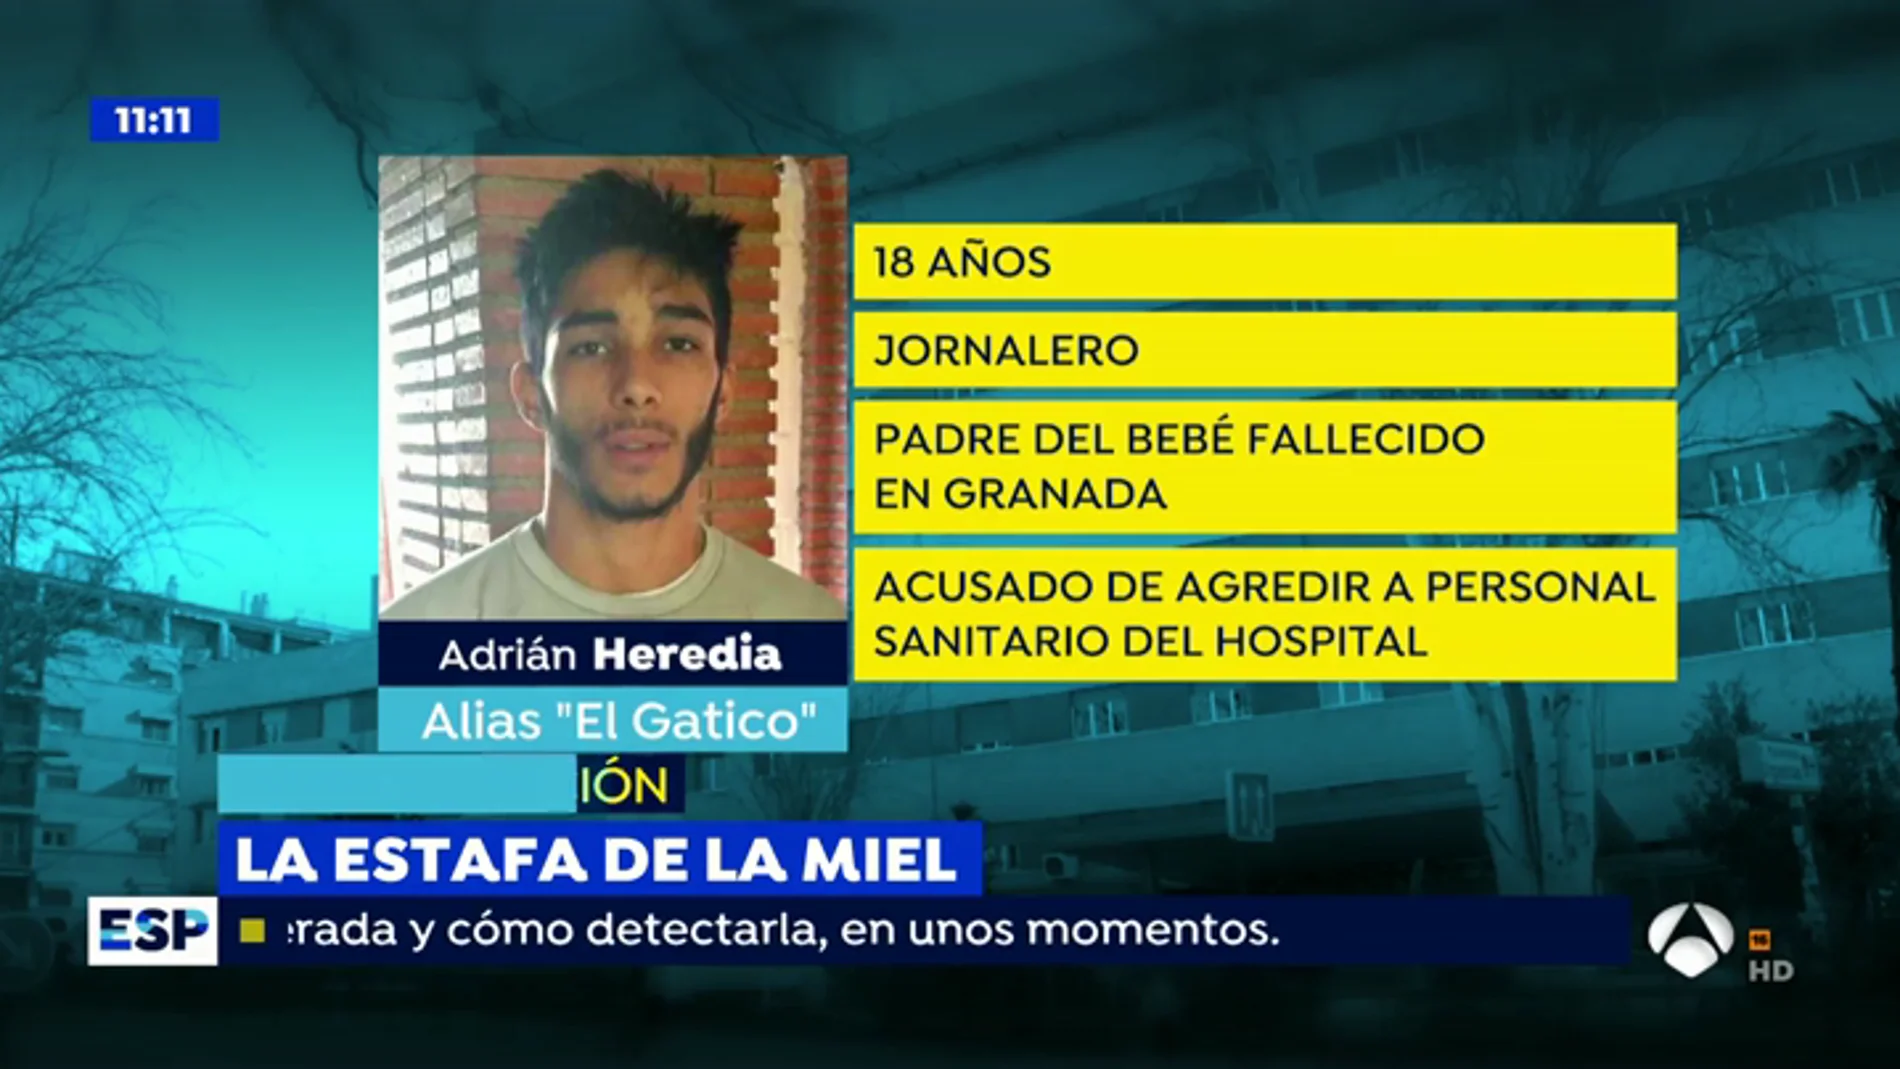 Habla el hombre acusado de agredir al personal sanitario del Hospital de Granada.